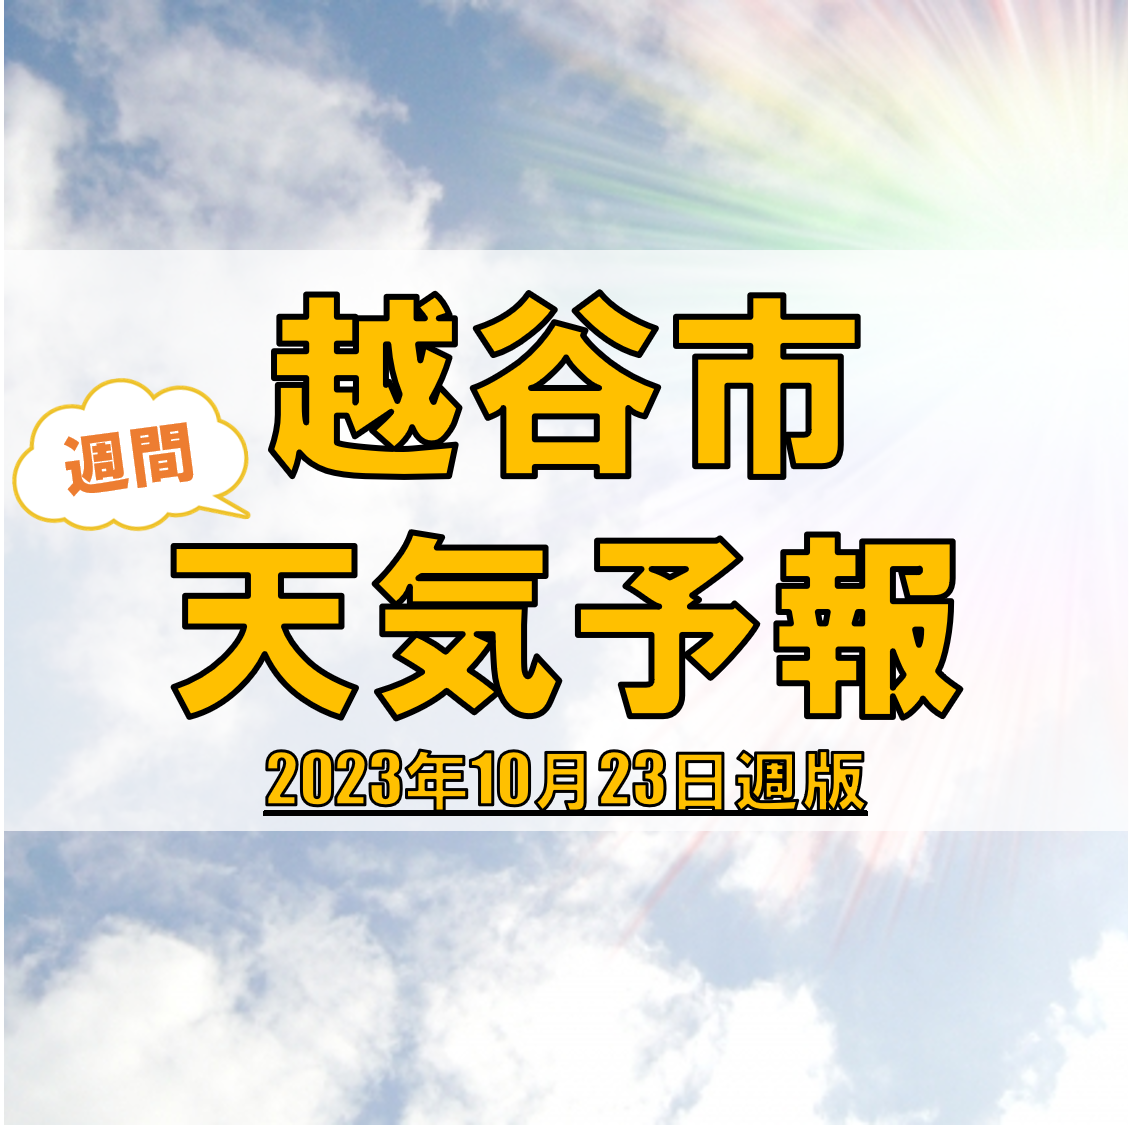 越谷市の天気 週間予報【2023年10月23日週】